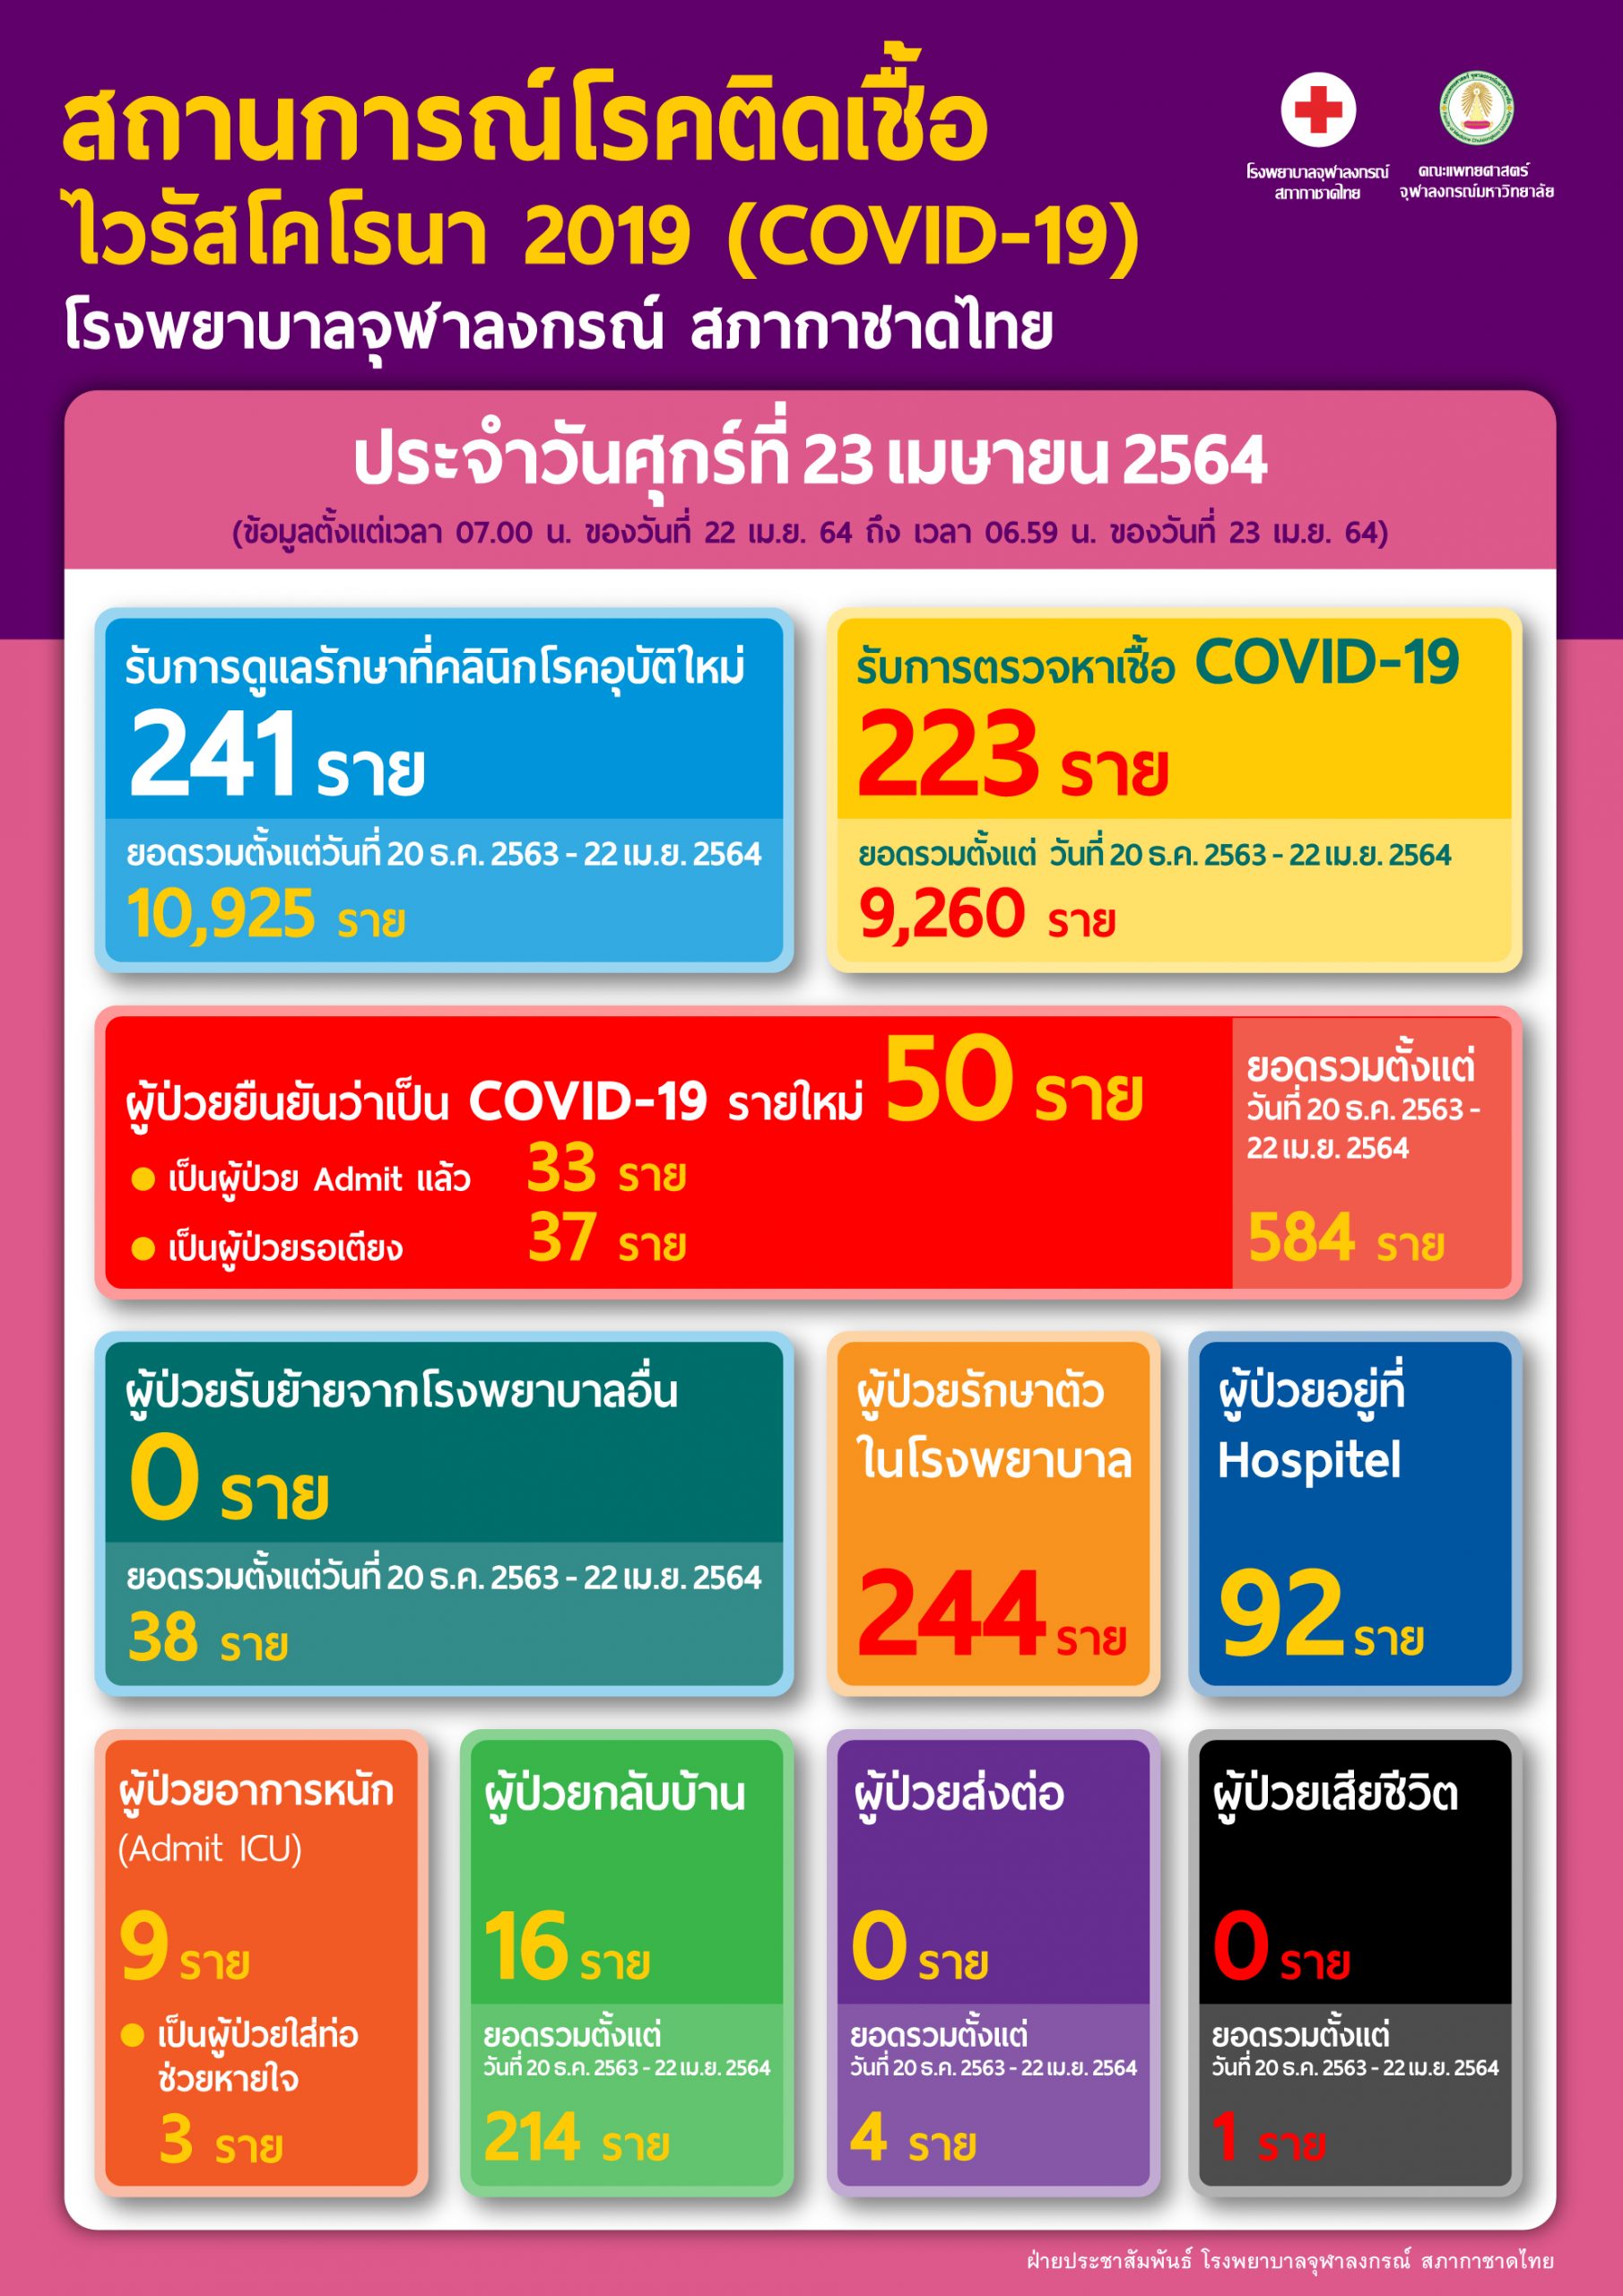 สถานการณ์โรคติดเชื้อ ไวรัสโคโรนา 2019 (COVID-19) โรงพยาบาลจุฬาลงกรณ์ สภากาชาดไทย ประจำวันศุกร์ที่ 23 เมษายน 2564